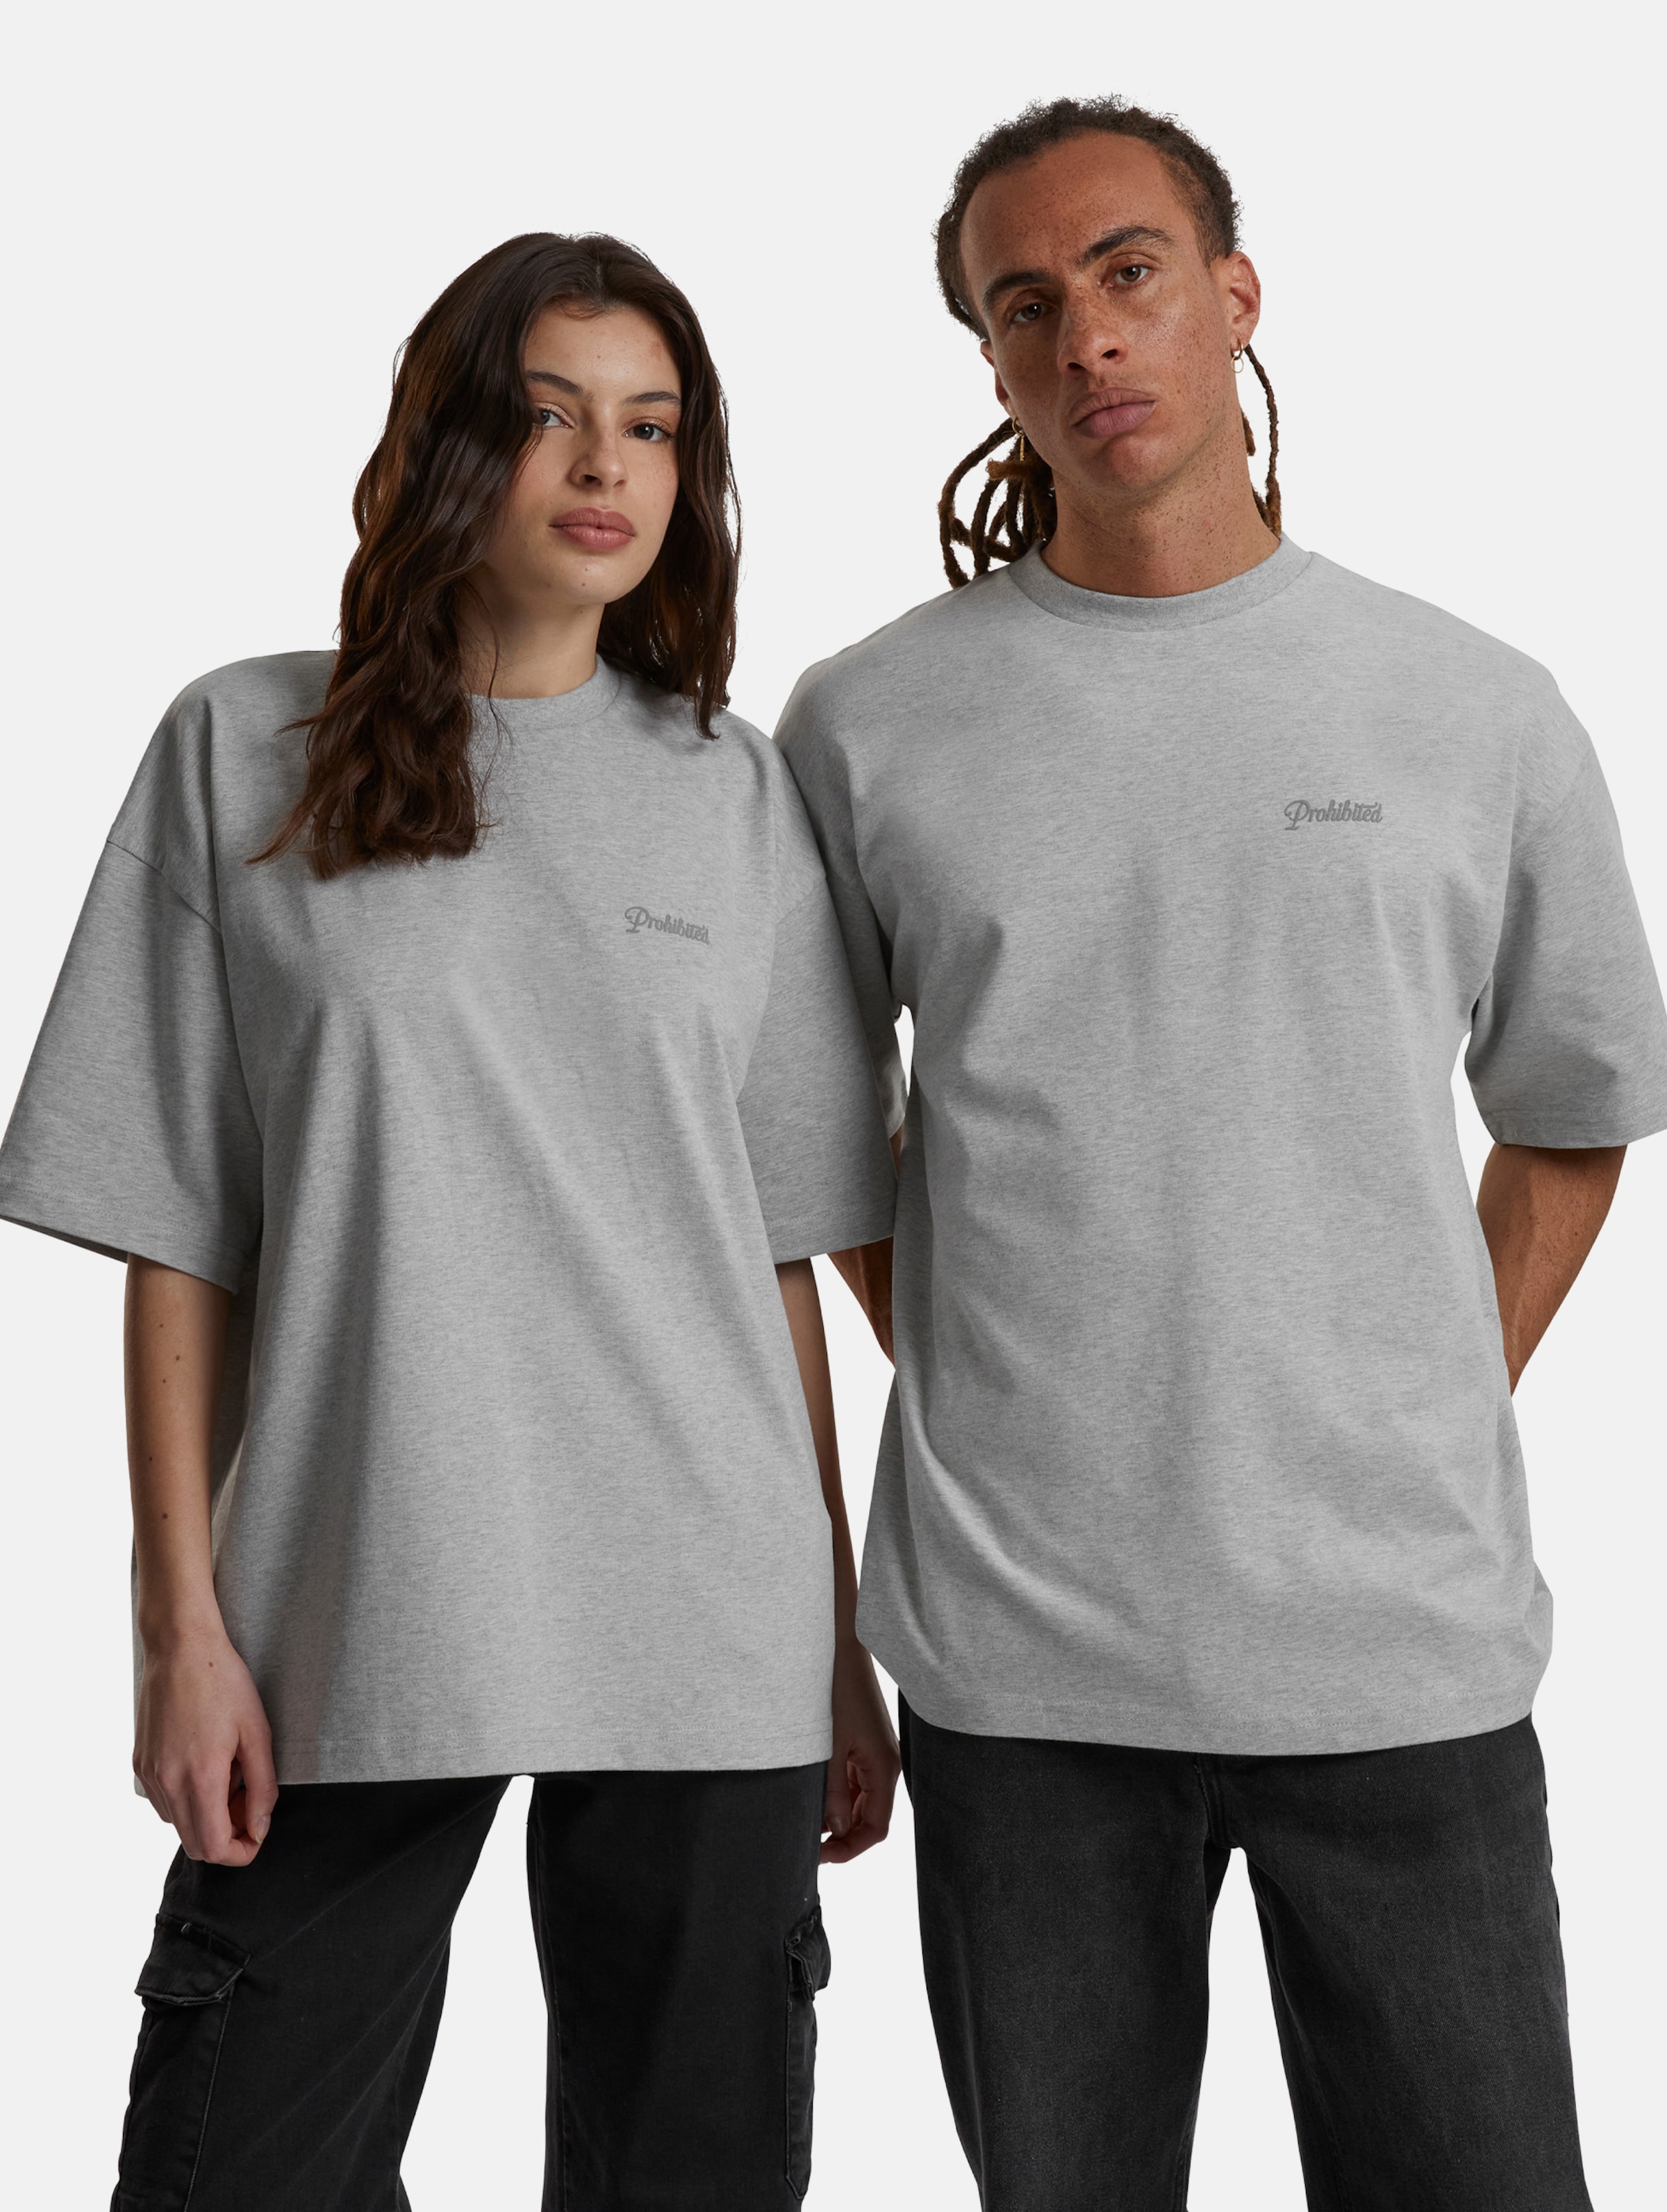 Prohibited 10119 V2 T-Shirts Frauen,Männer,Unisex op kleur grijs, Maat XS